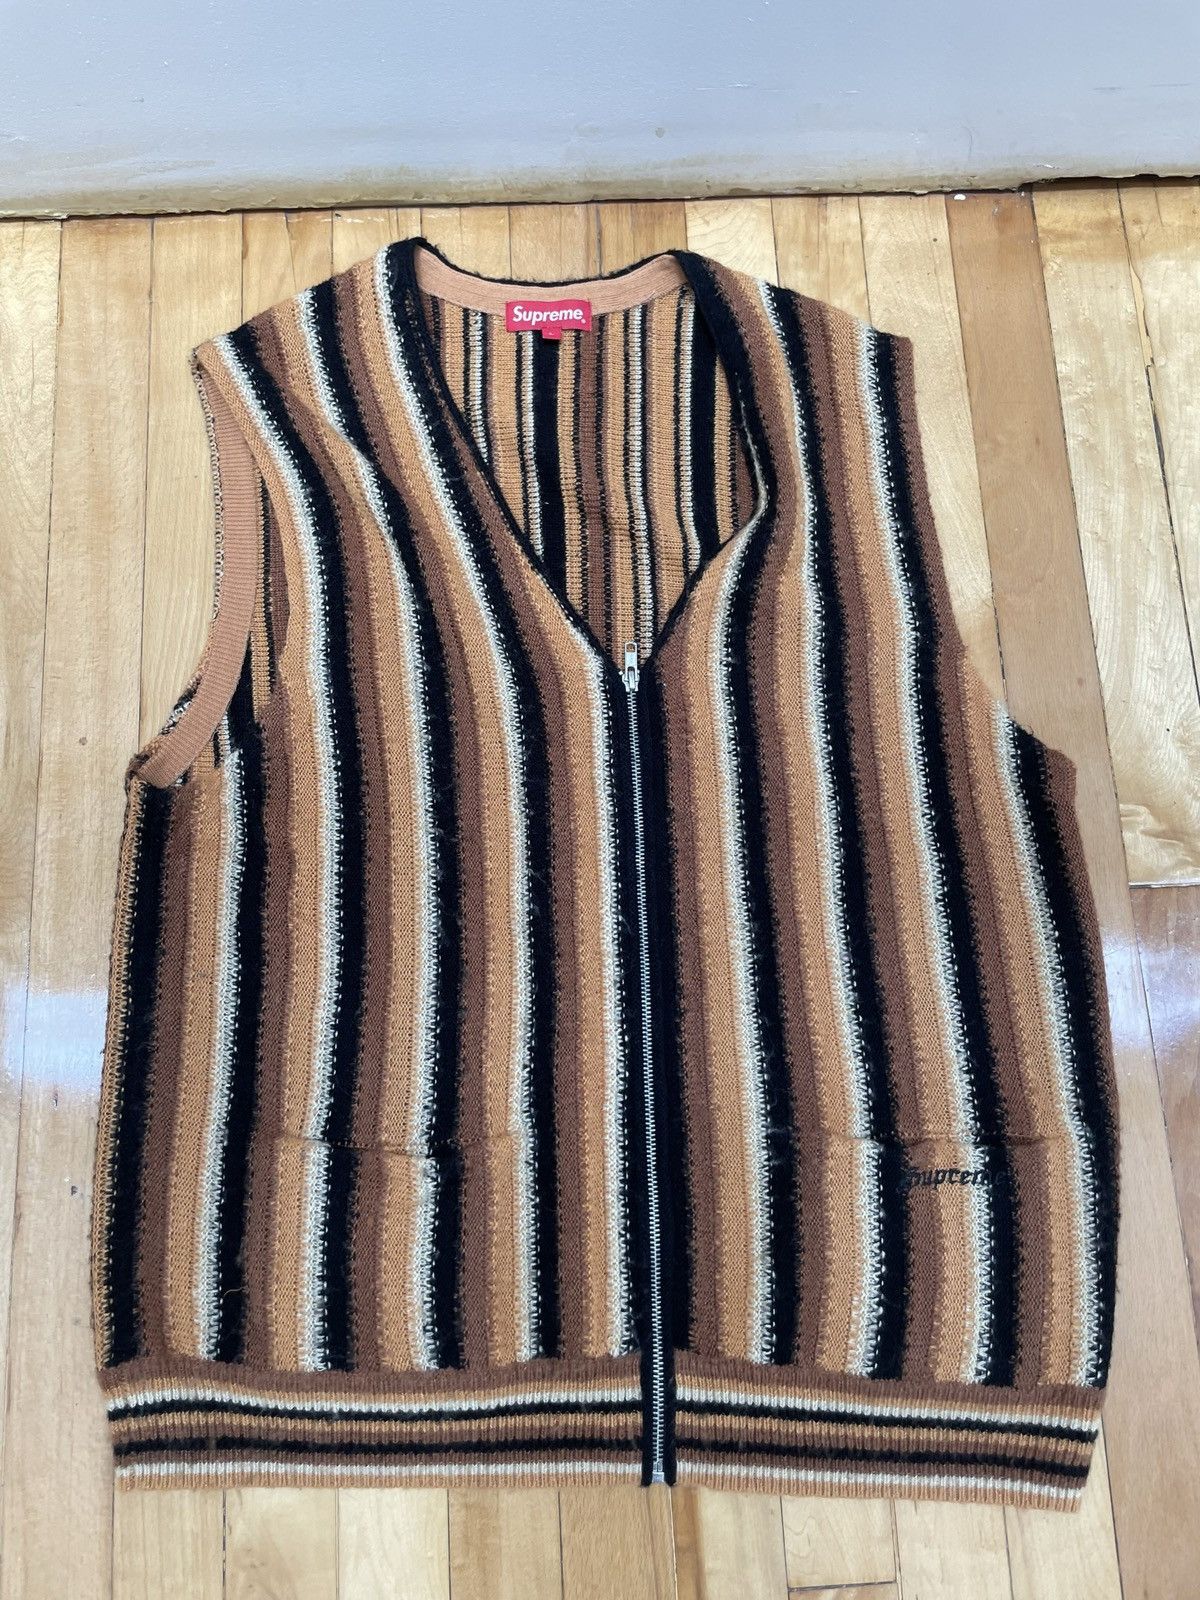 Supreme Supreme Stripped Sweater Vest Brown (L) | Grailed